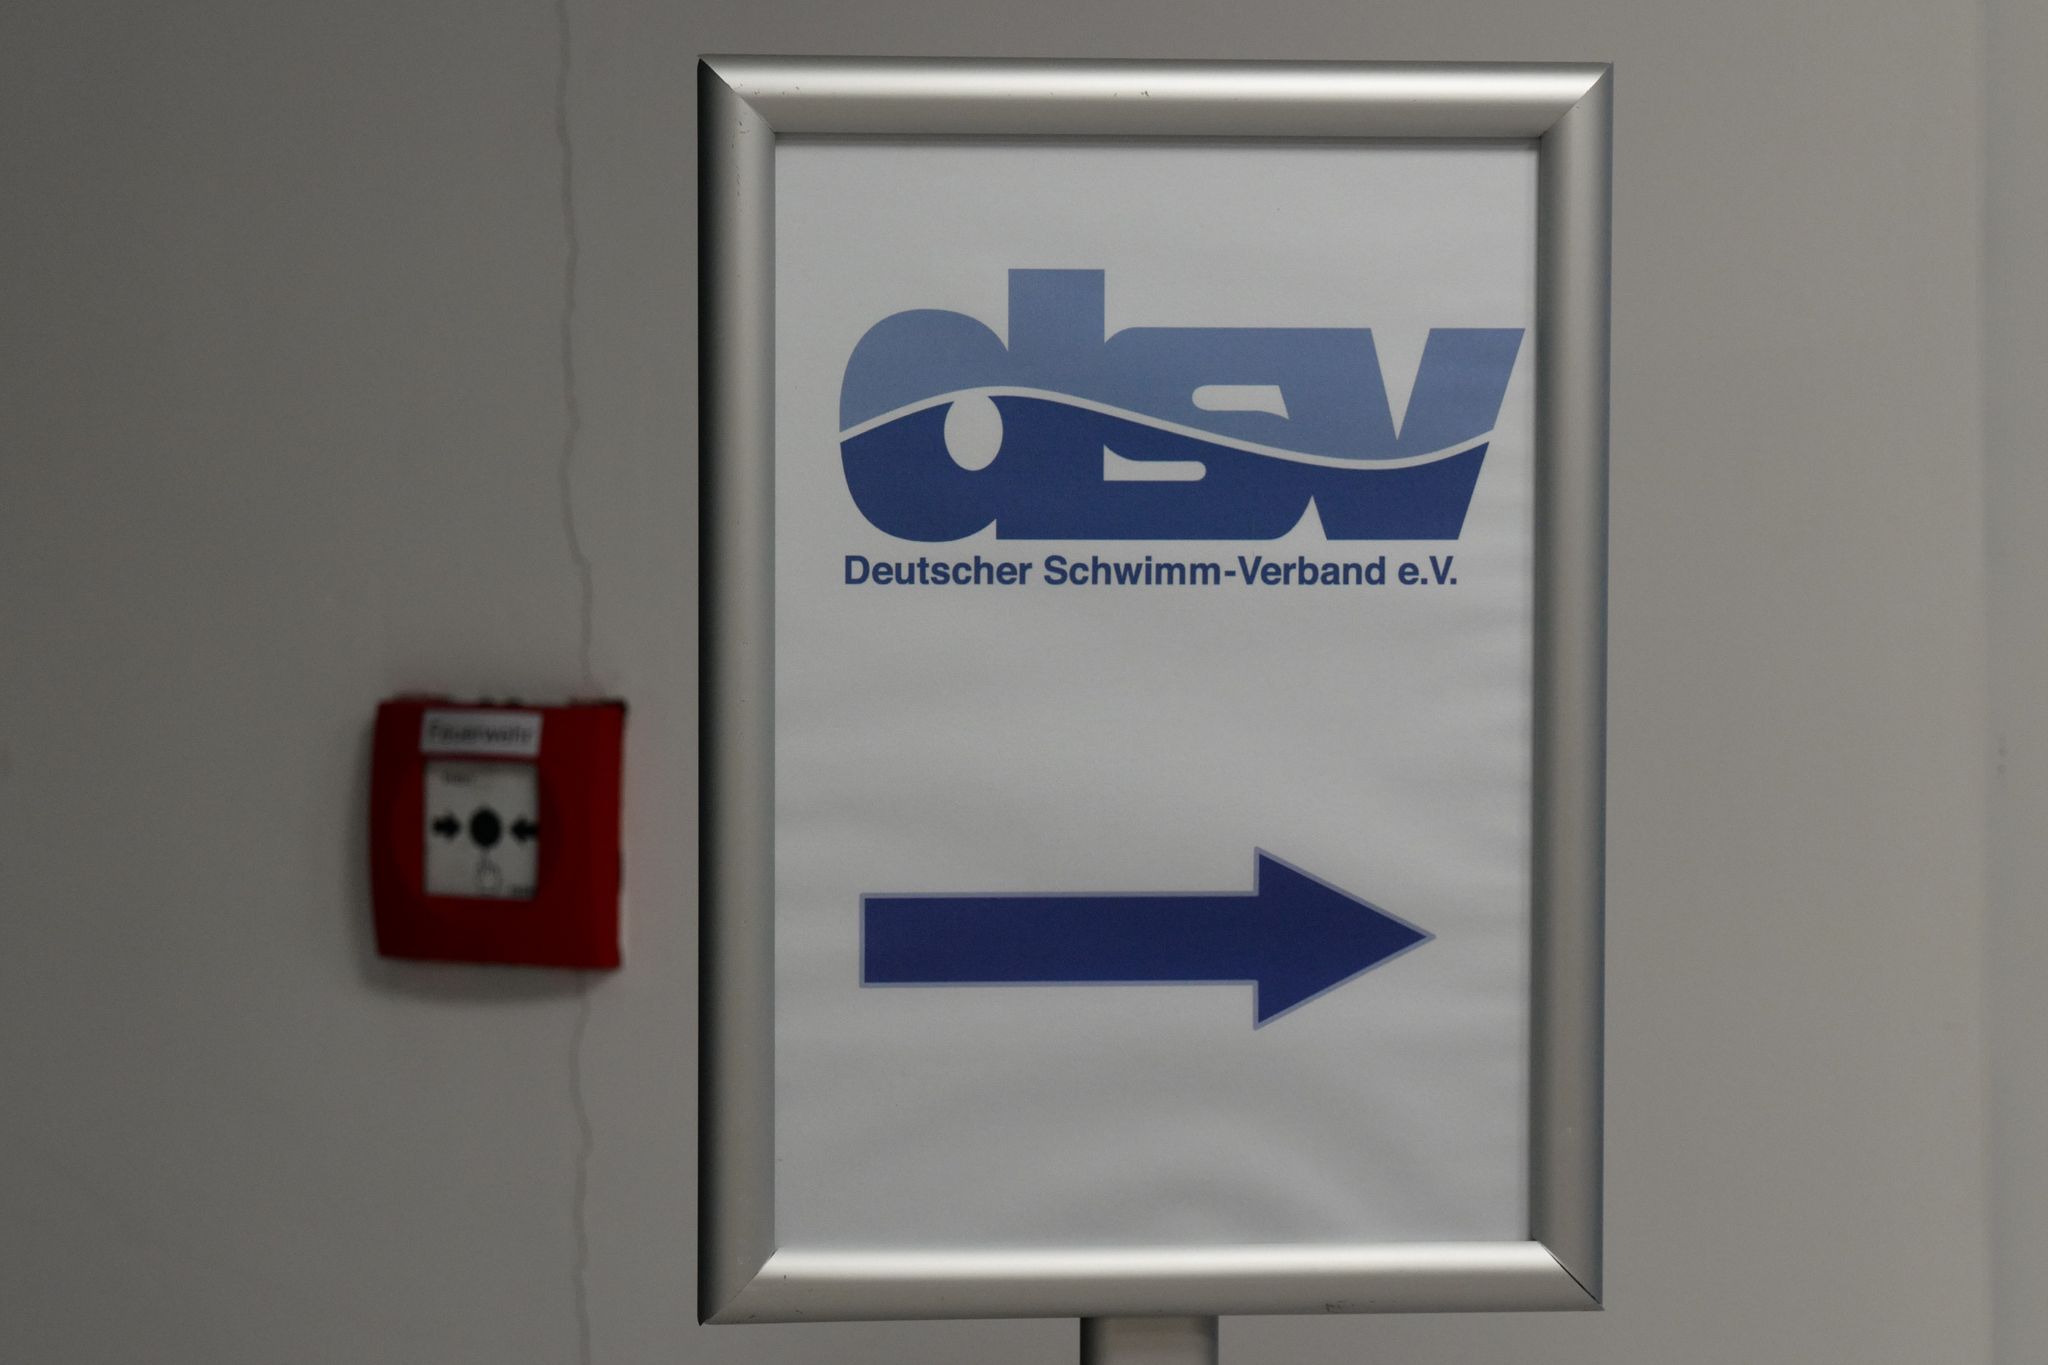 Der Deutschen Schwimm-Verband (DSV) untersucht die eingehenden Hinweise auf Missbrauchsvorwürfe.